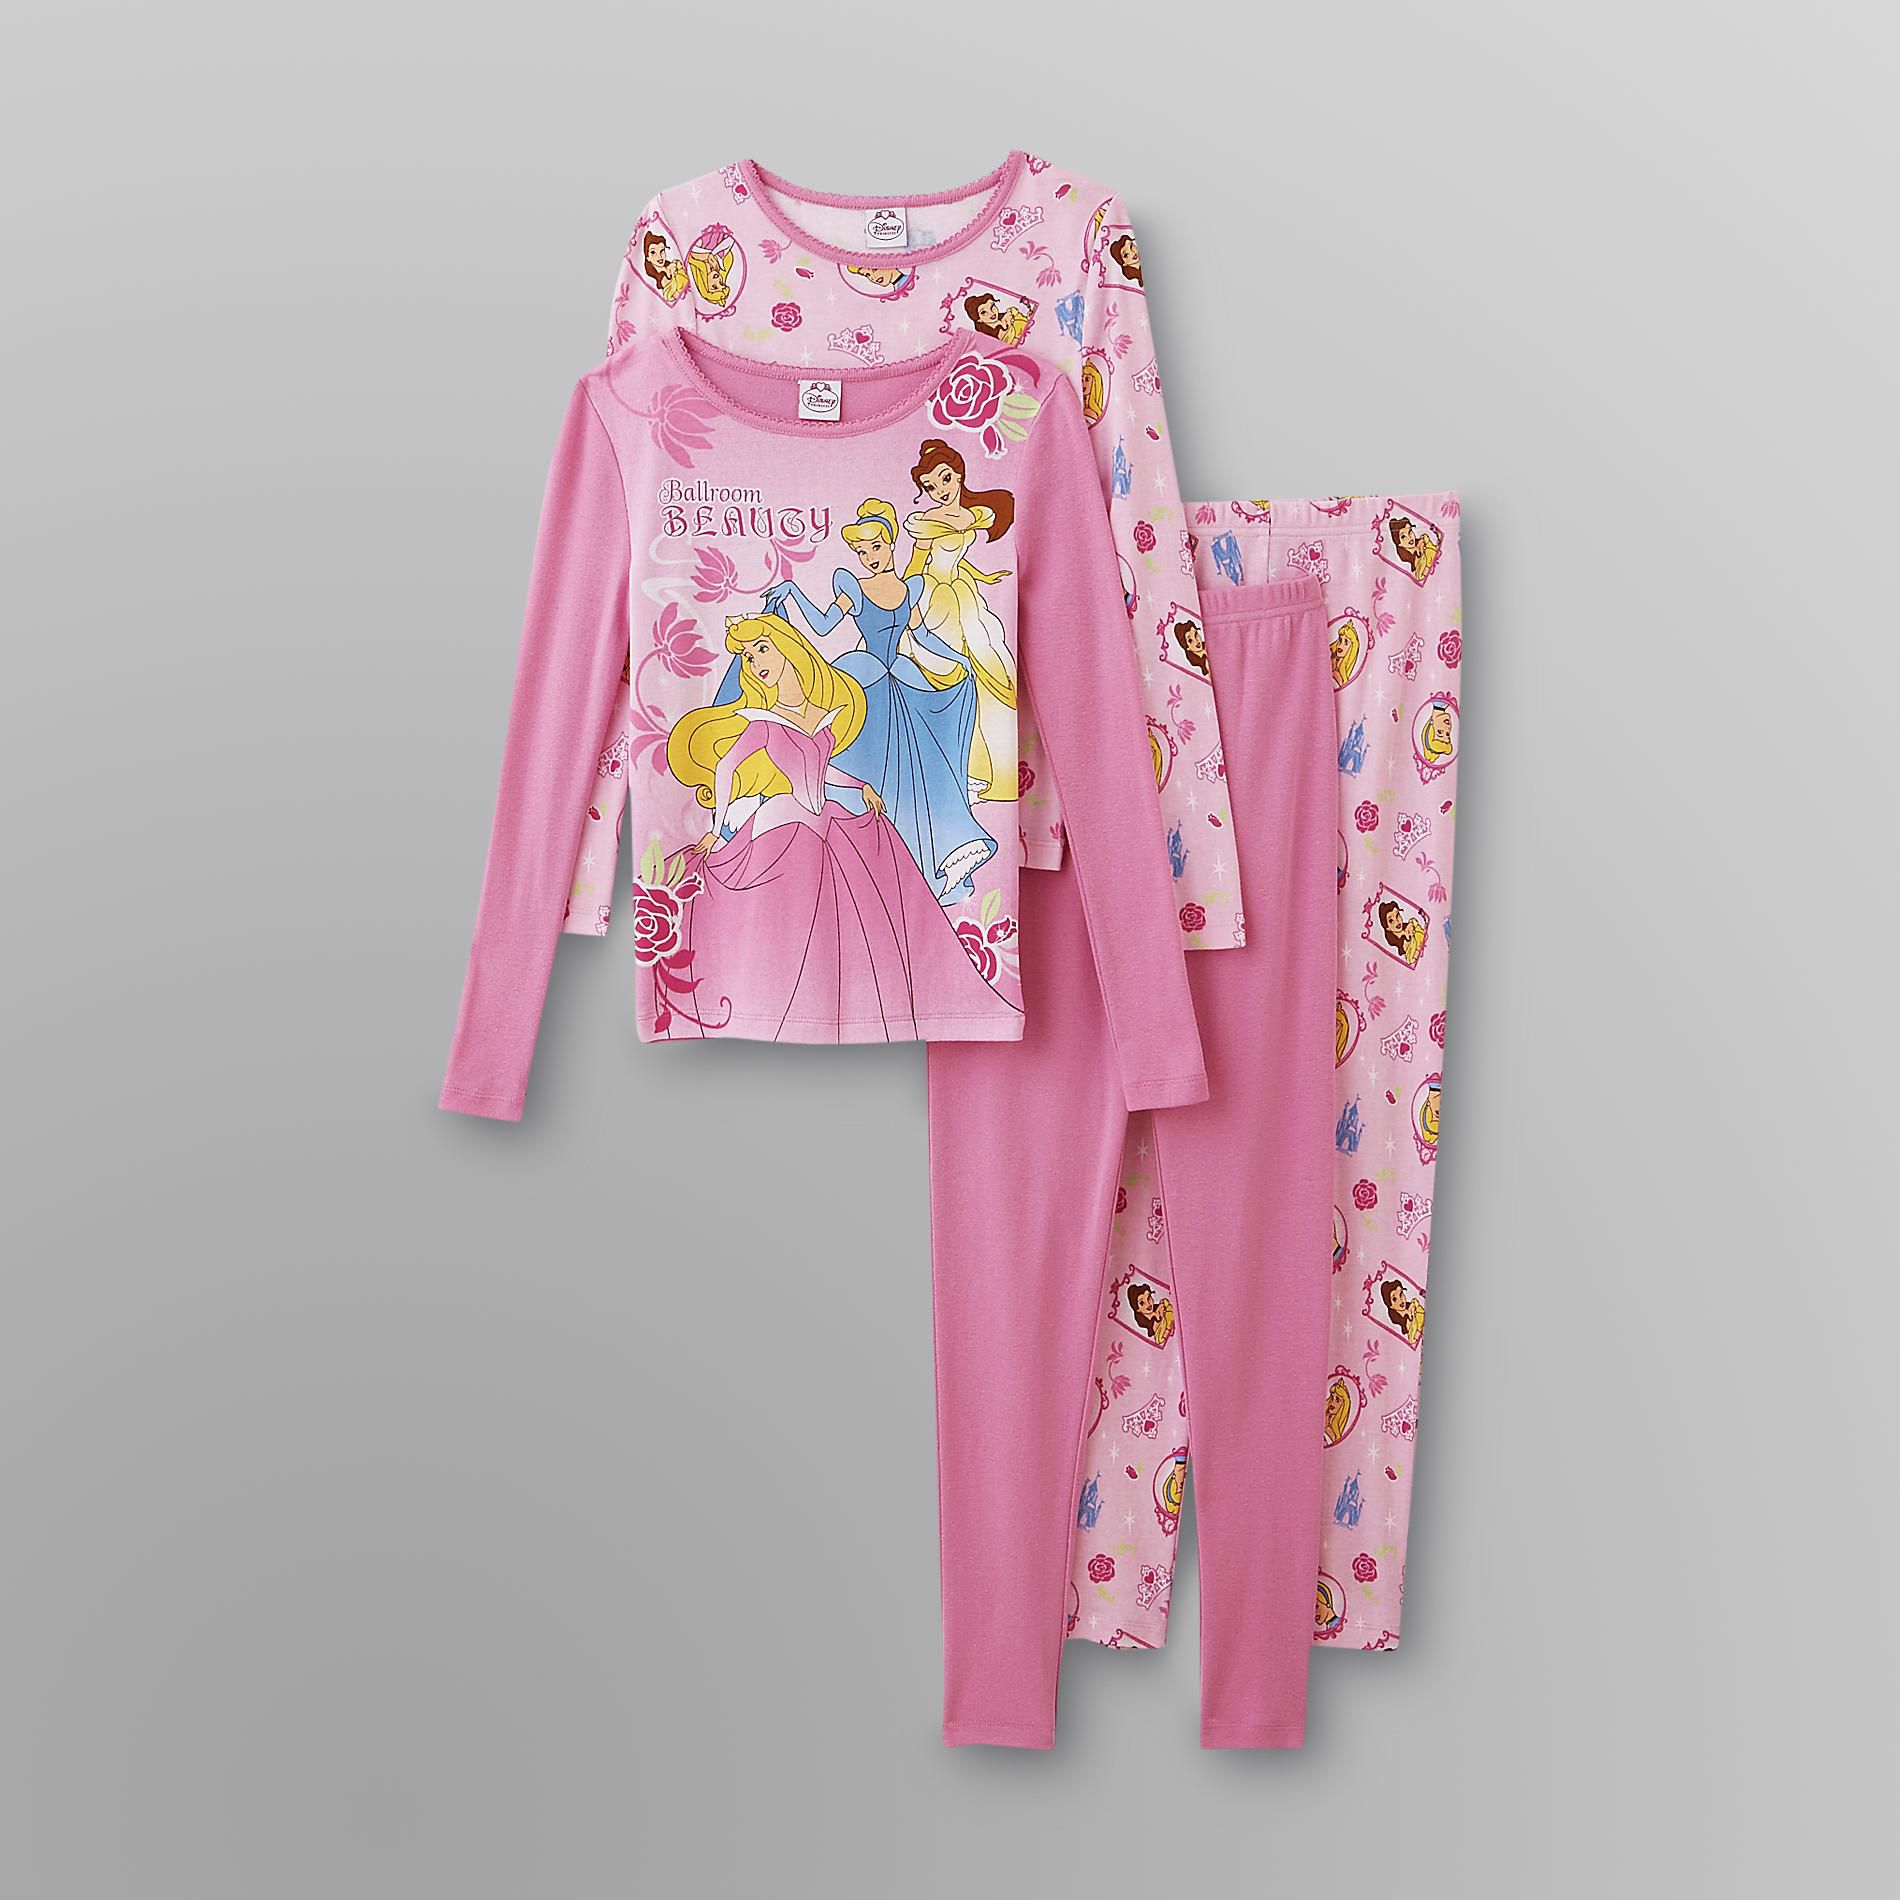 Disney Princess Girl's Pajamas - 2 Sets